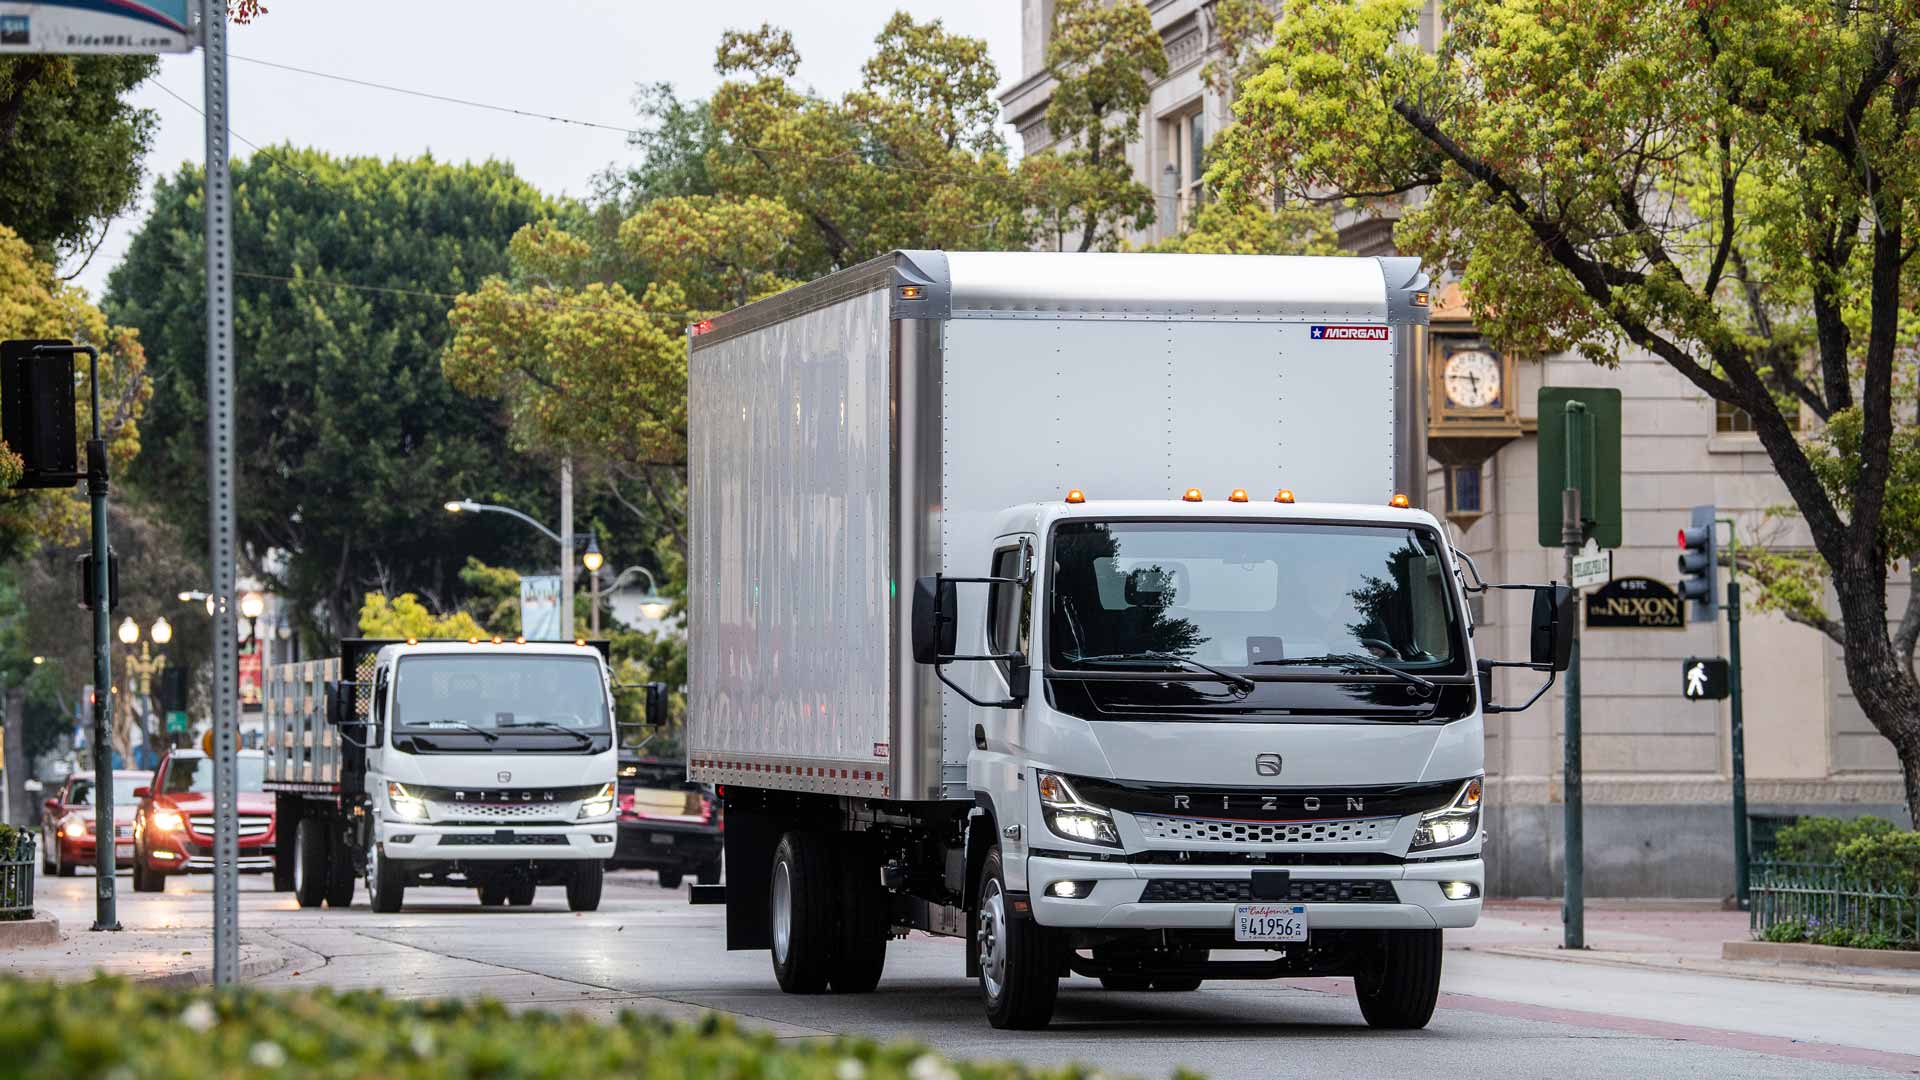 Daimler Truck confirma primeiras entregas da linha Rizon na Califórnia